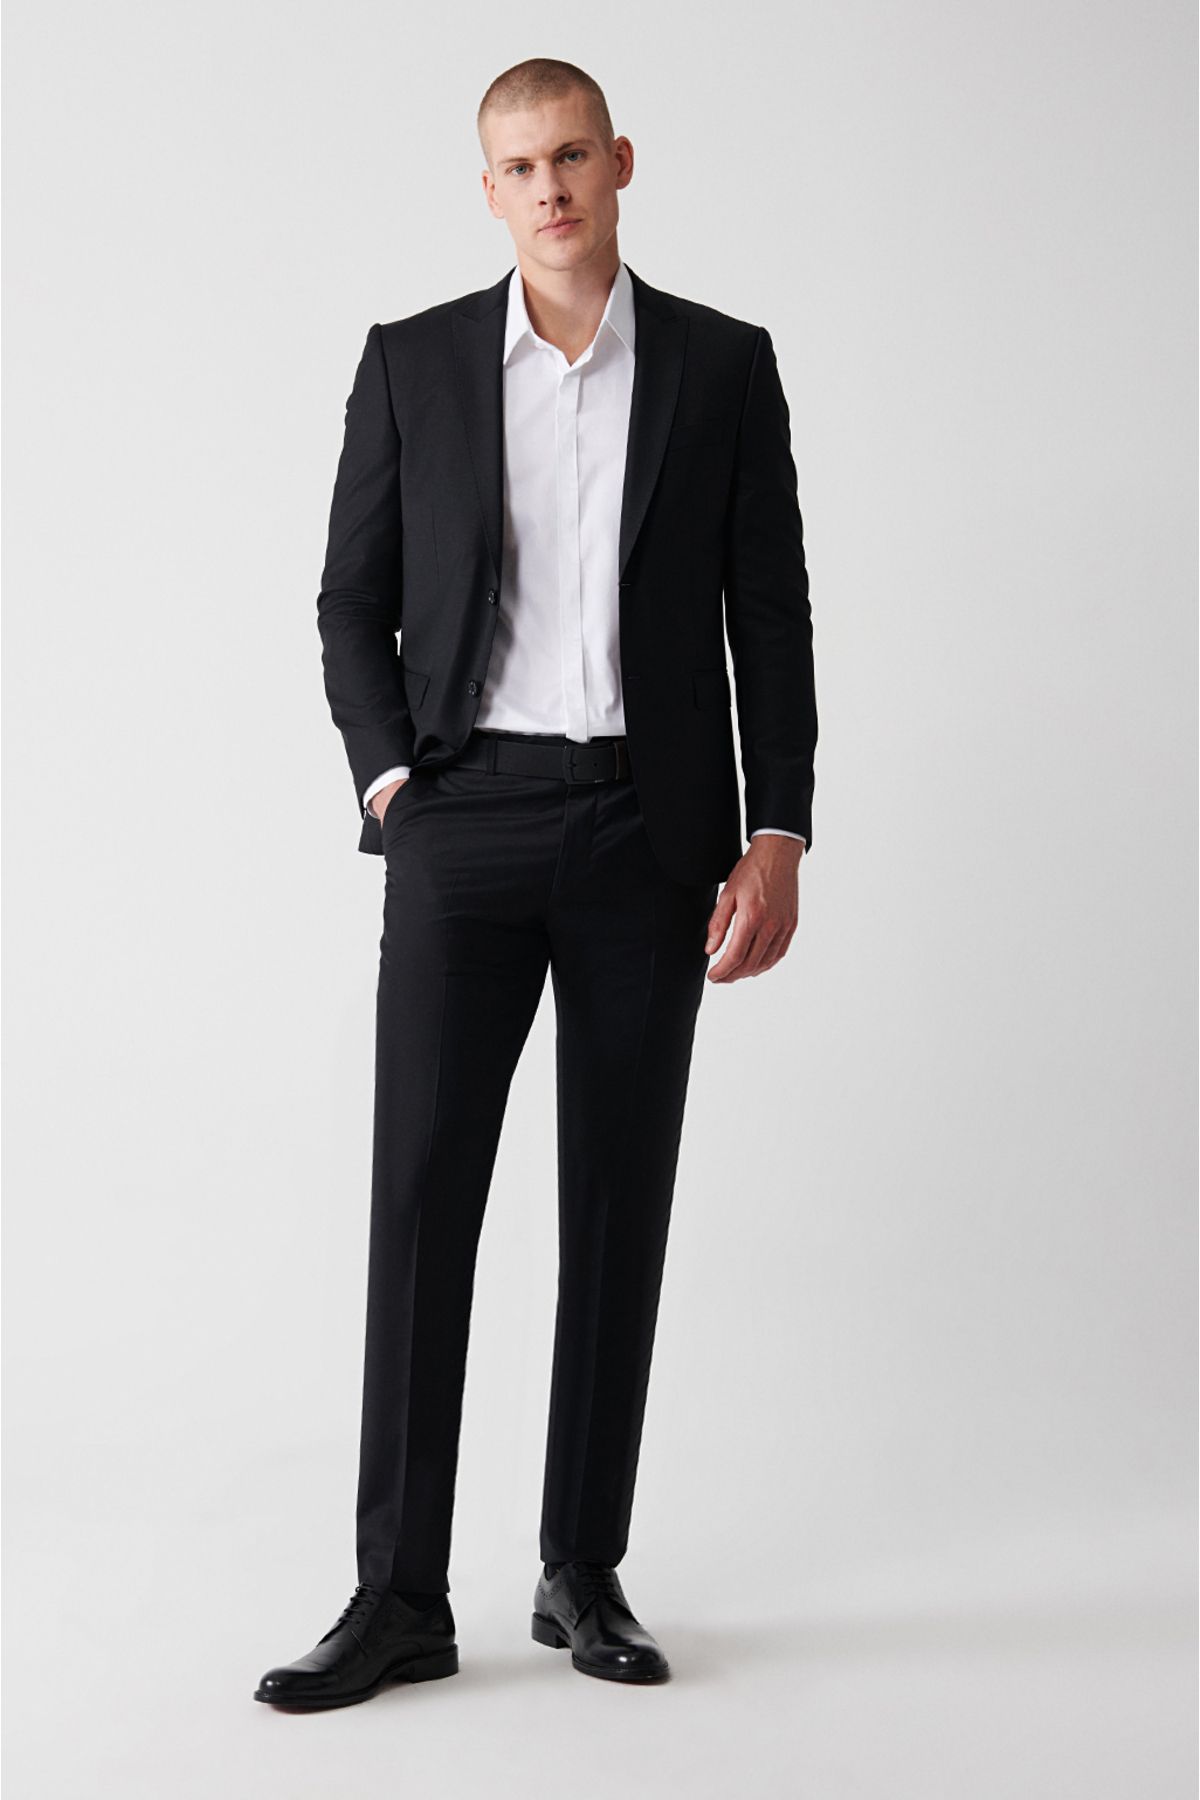 Avva Erkek Siyah Yünlü Takım Elbise Kırlangıç Yaka Çift Yırtmaçlı Astarlı Comfort Slim Fit B007701